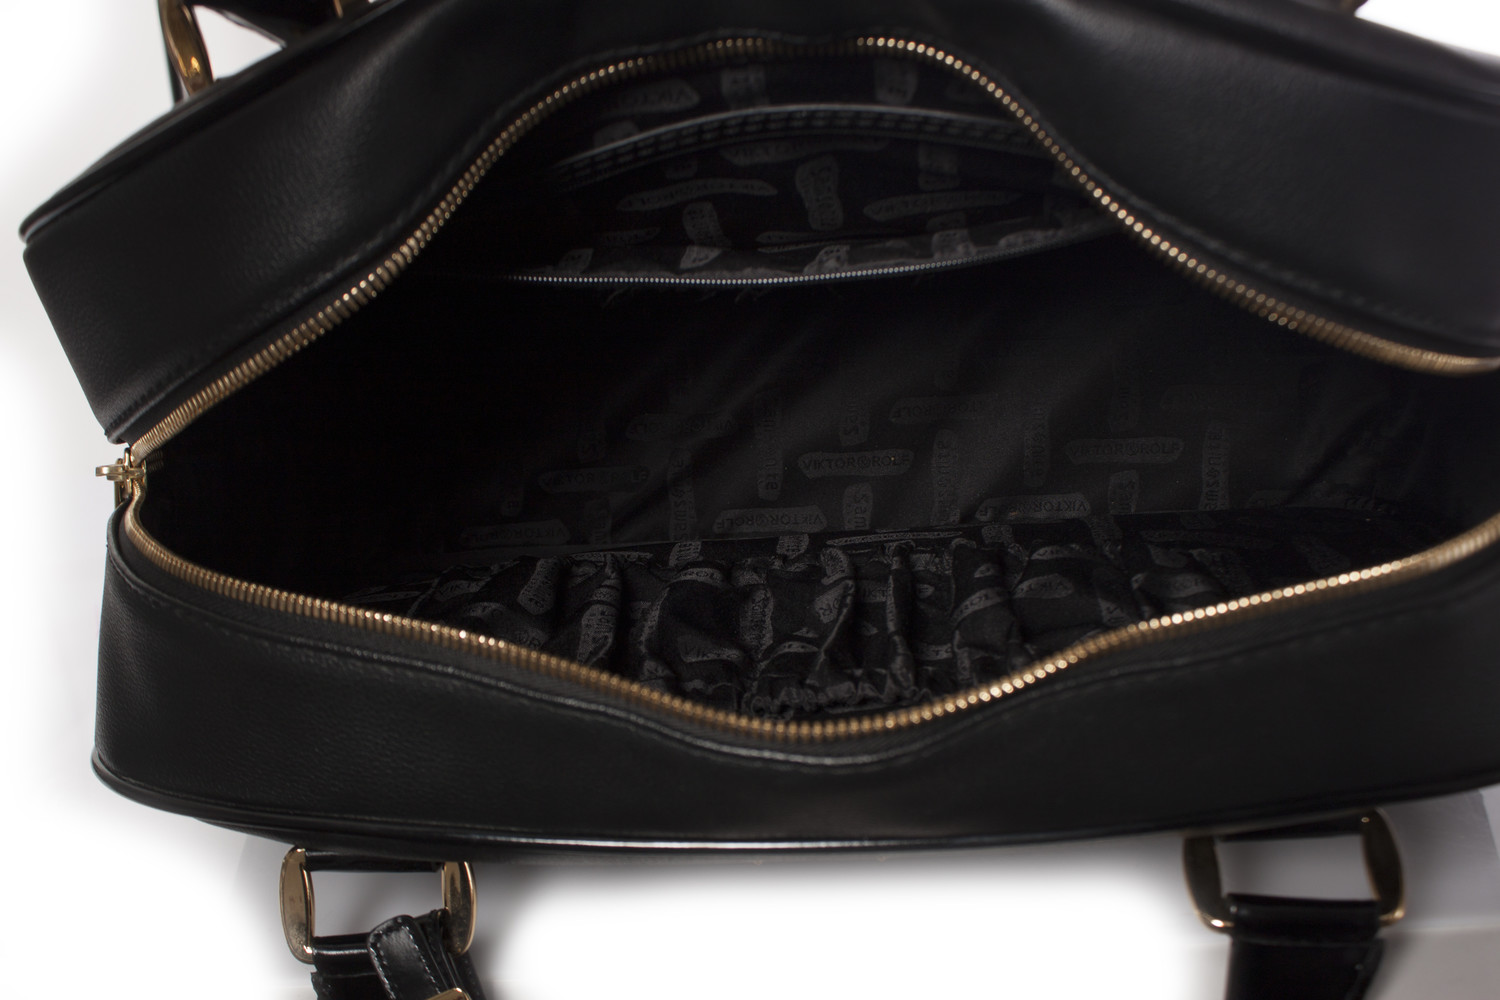 SAMSONITE BLACK LABEL by VIKTOR & ROLF, Large Weekend bag. - Unique ...